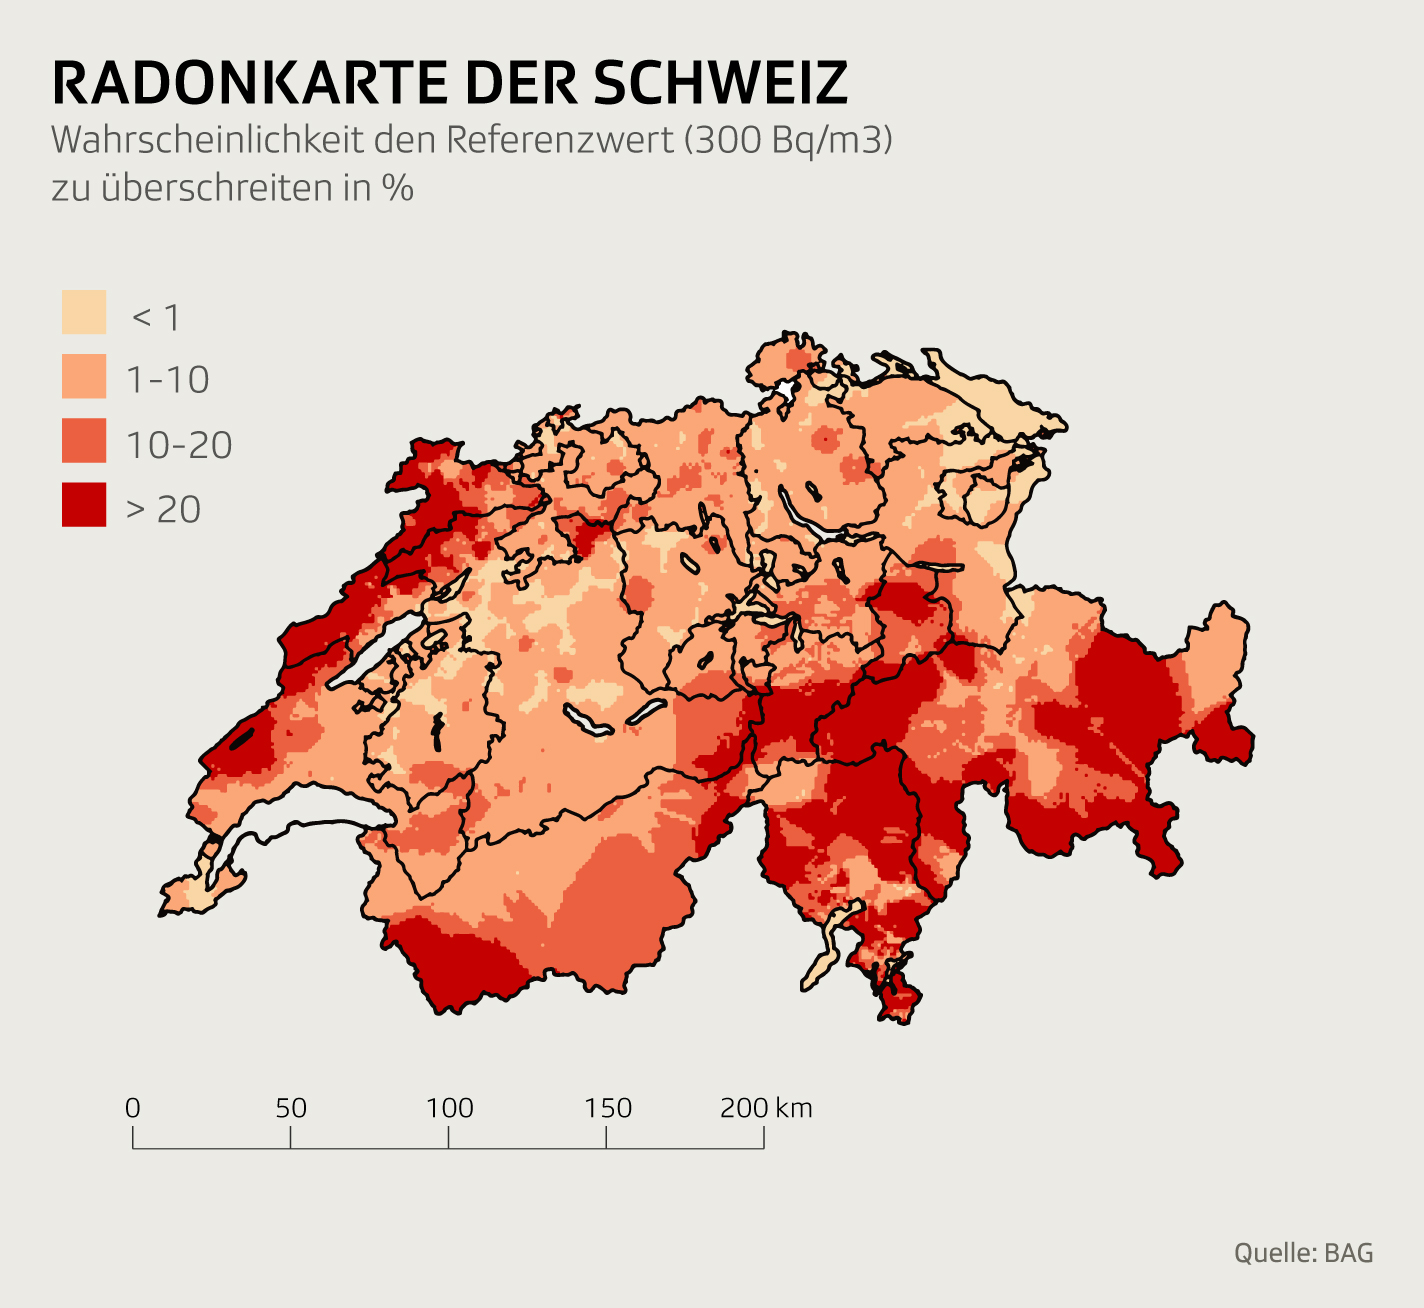 Radonkarte der Schweiz